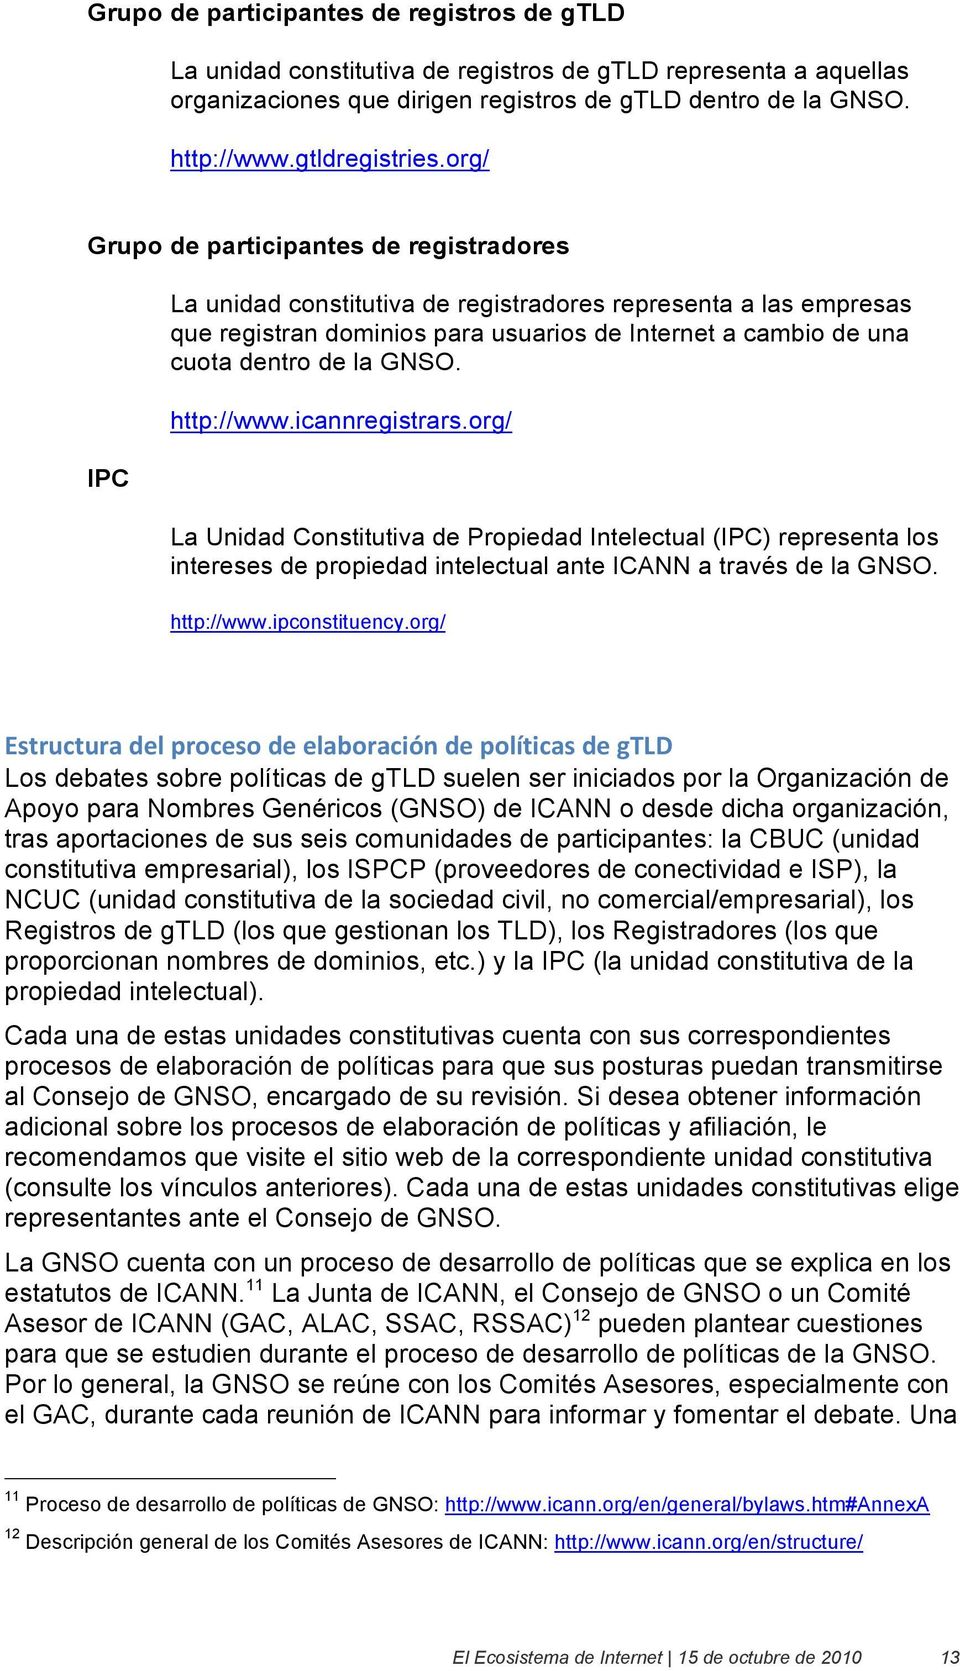 GNSO. http://www.icannregistrars.org/ La Unidad Constitutiva de Propiedad Intelectual (IPC) representa los intereses de propiedad intelectual ante ICANN a través de la GNSO. http://www.ipconstituency.